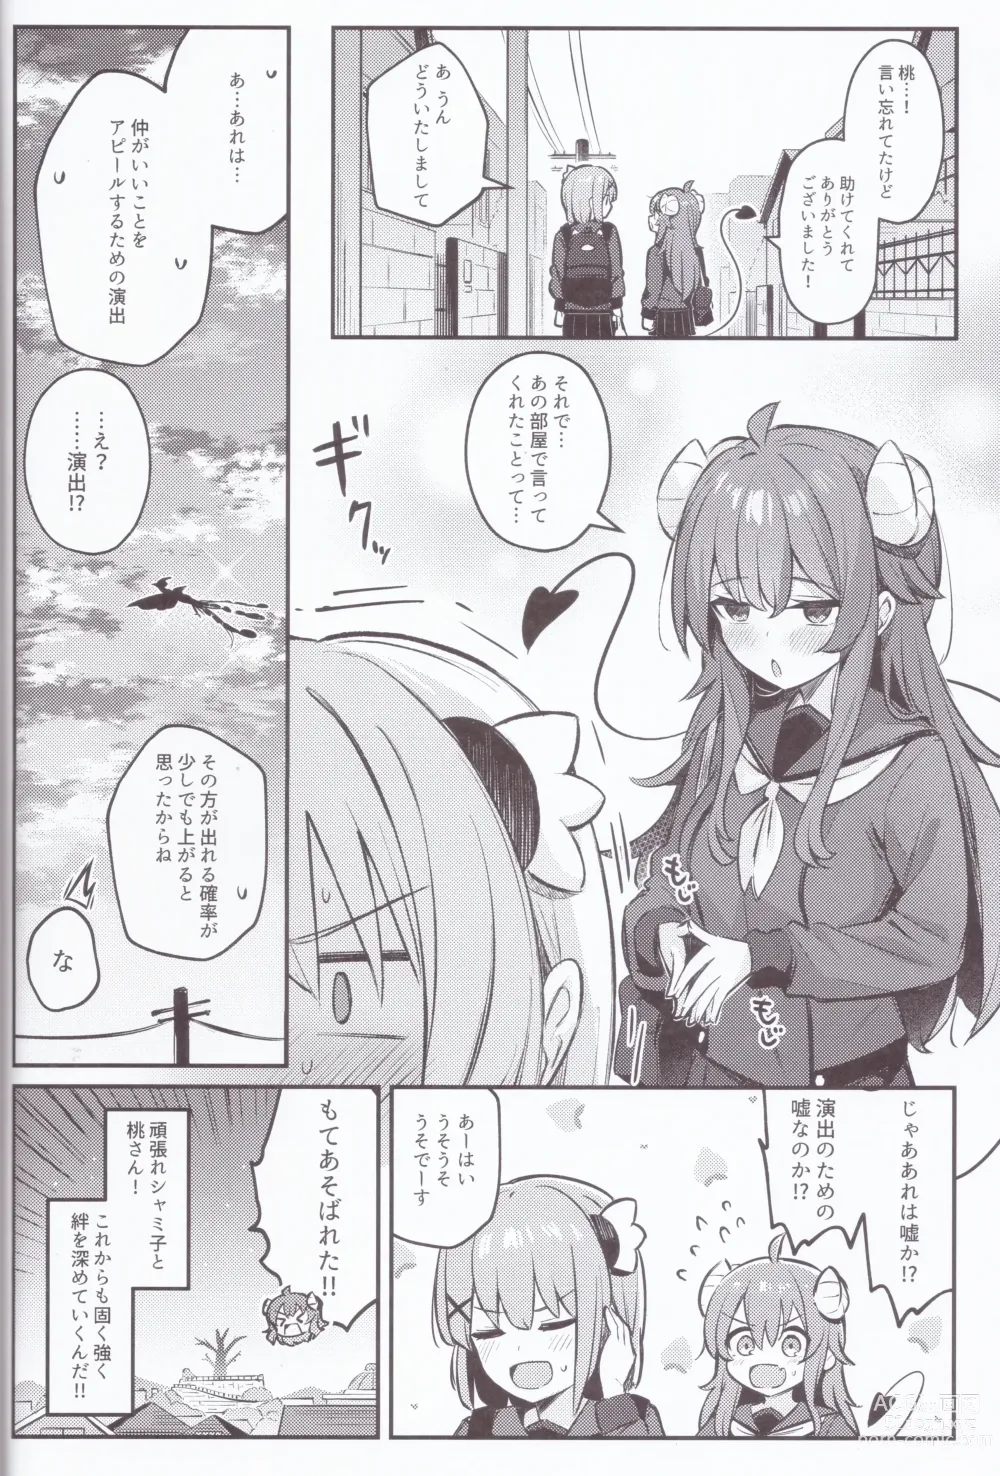 Page 39 of doujinshi Mazoku wa  Shukuteki to  Nakayoshi Shinai to Derarenai Heya ni, Tojikomerarete Shimatta!